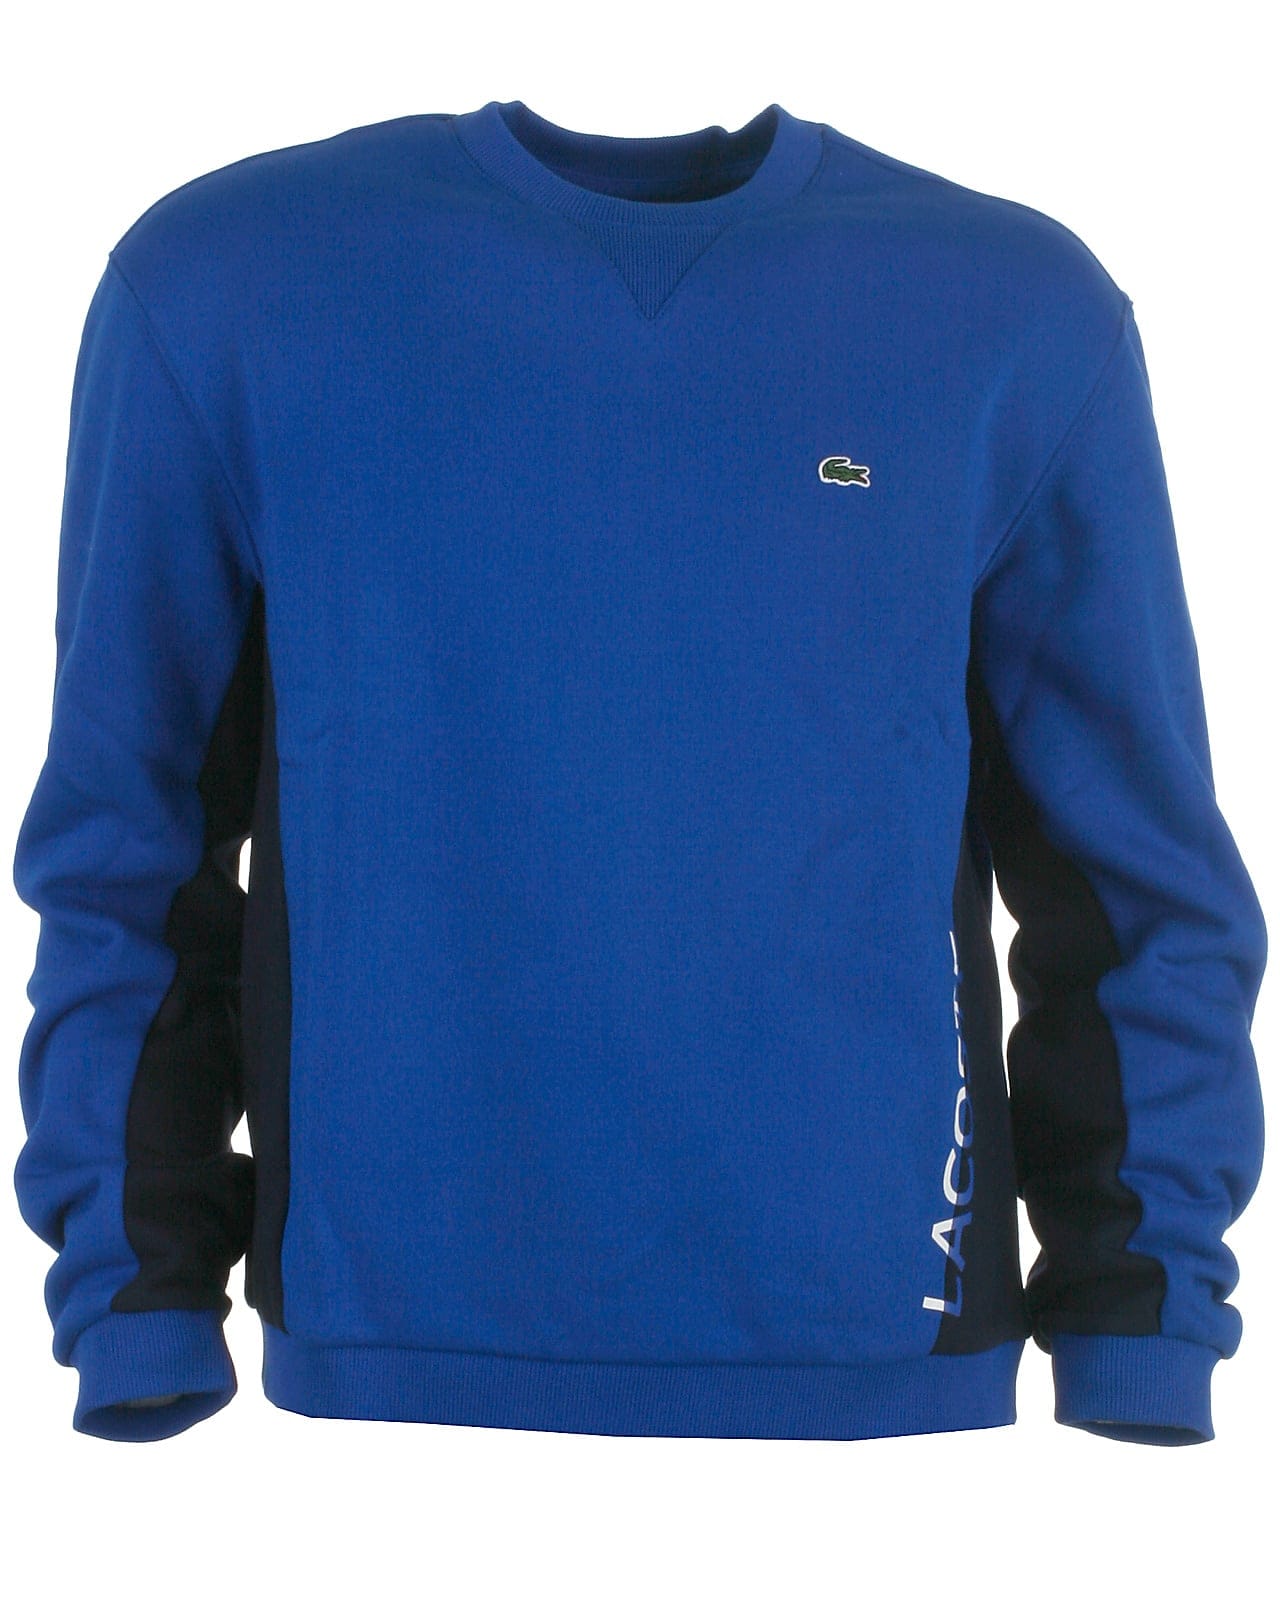 Lacoste sweatshirt, blue - 152,12år